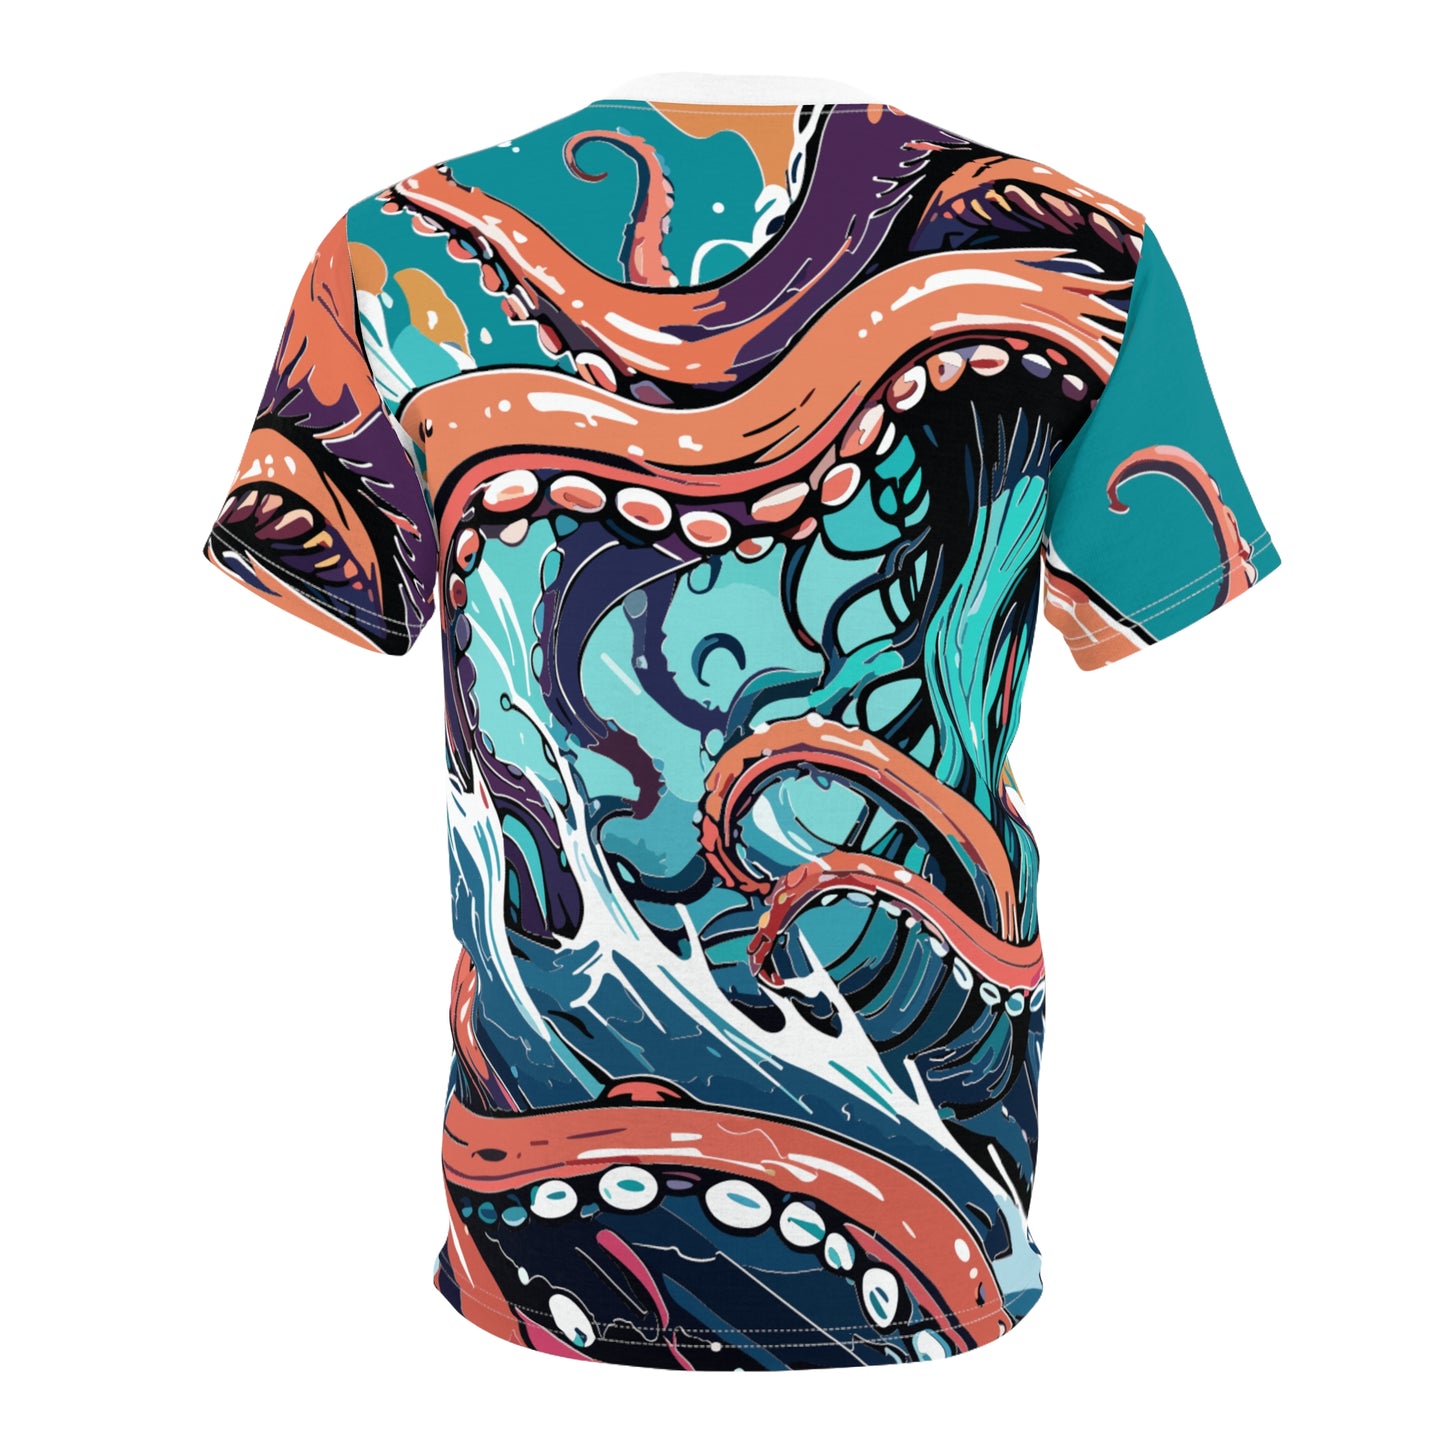 Kraken Sea Monster T-Shirt